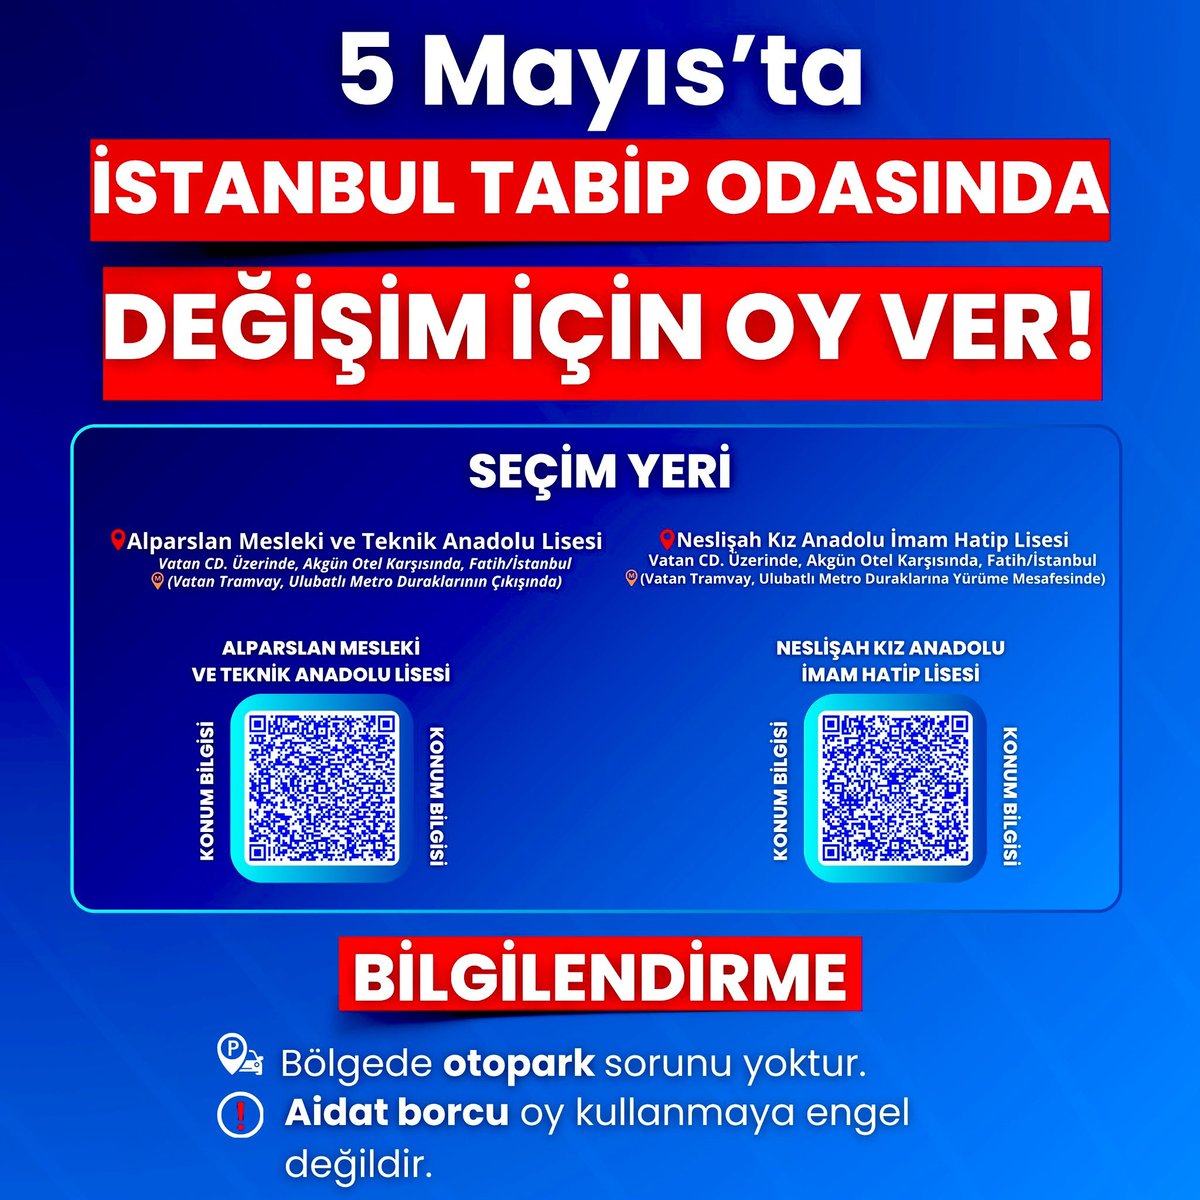 Yarın İstanbul Tabip Odası Seçimleri var. Vatansever doktorların, terör sevicilerine karşı @degisimciler grubunu desteklemesi lazım. İstanbul Tabip Odasının ismine yakışır, teröre destek olmayan başkana ihtiyacı var. Sonuna kadar @AhmetErcek'i desteklemek lazım.